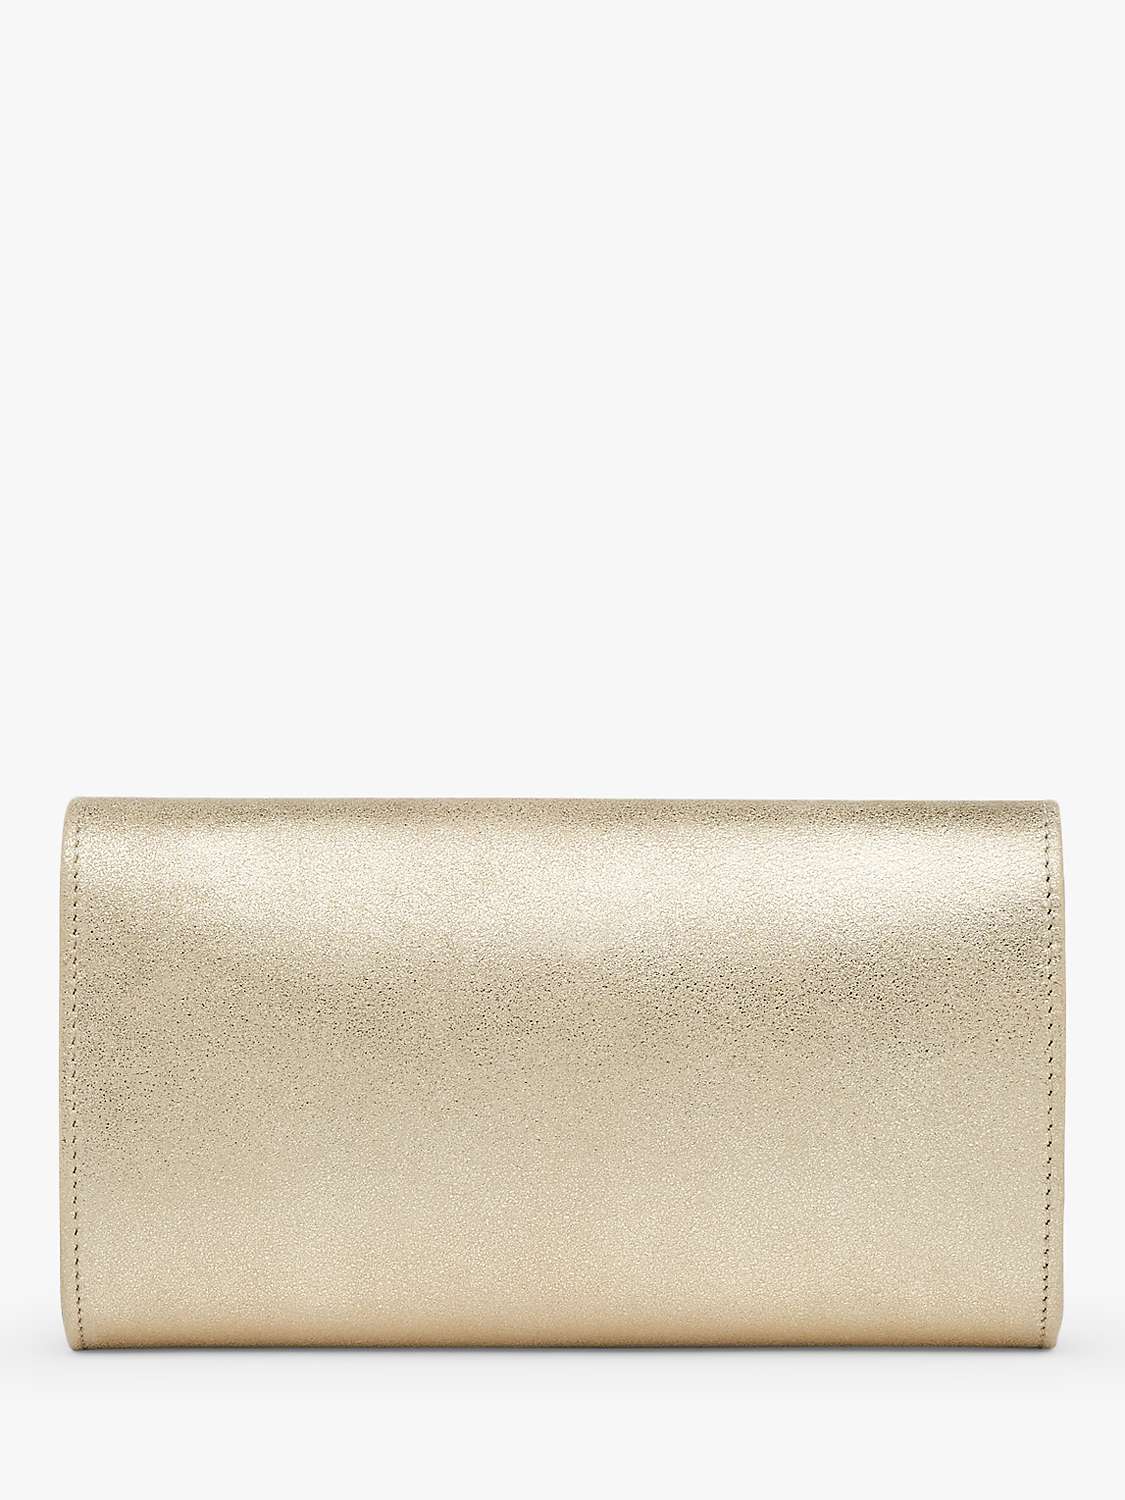 Buy L.K.Bennett Lucy Envelope Leather Clutch Bag, Gold Online at johnlewis.com